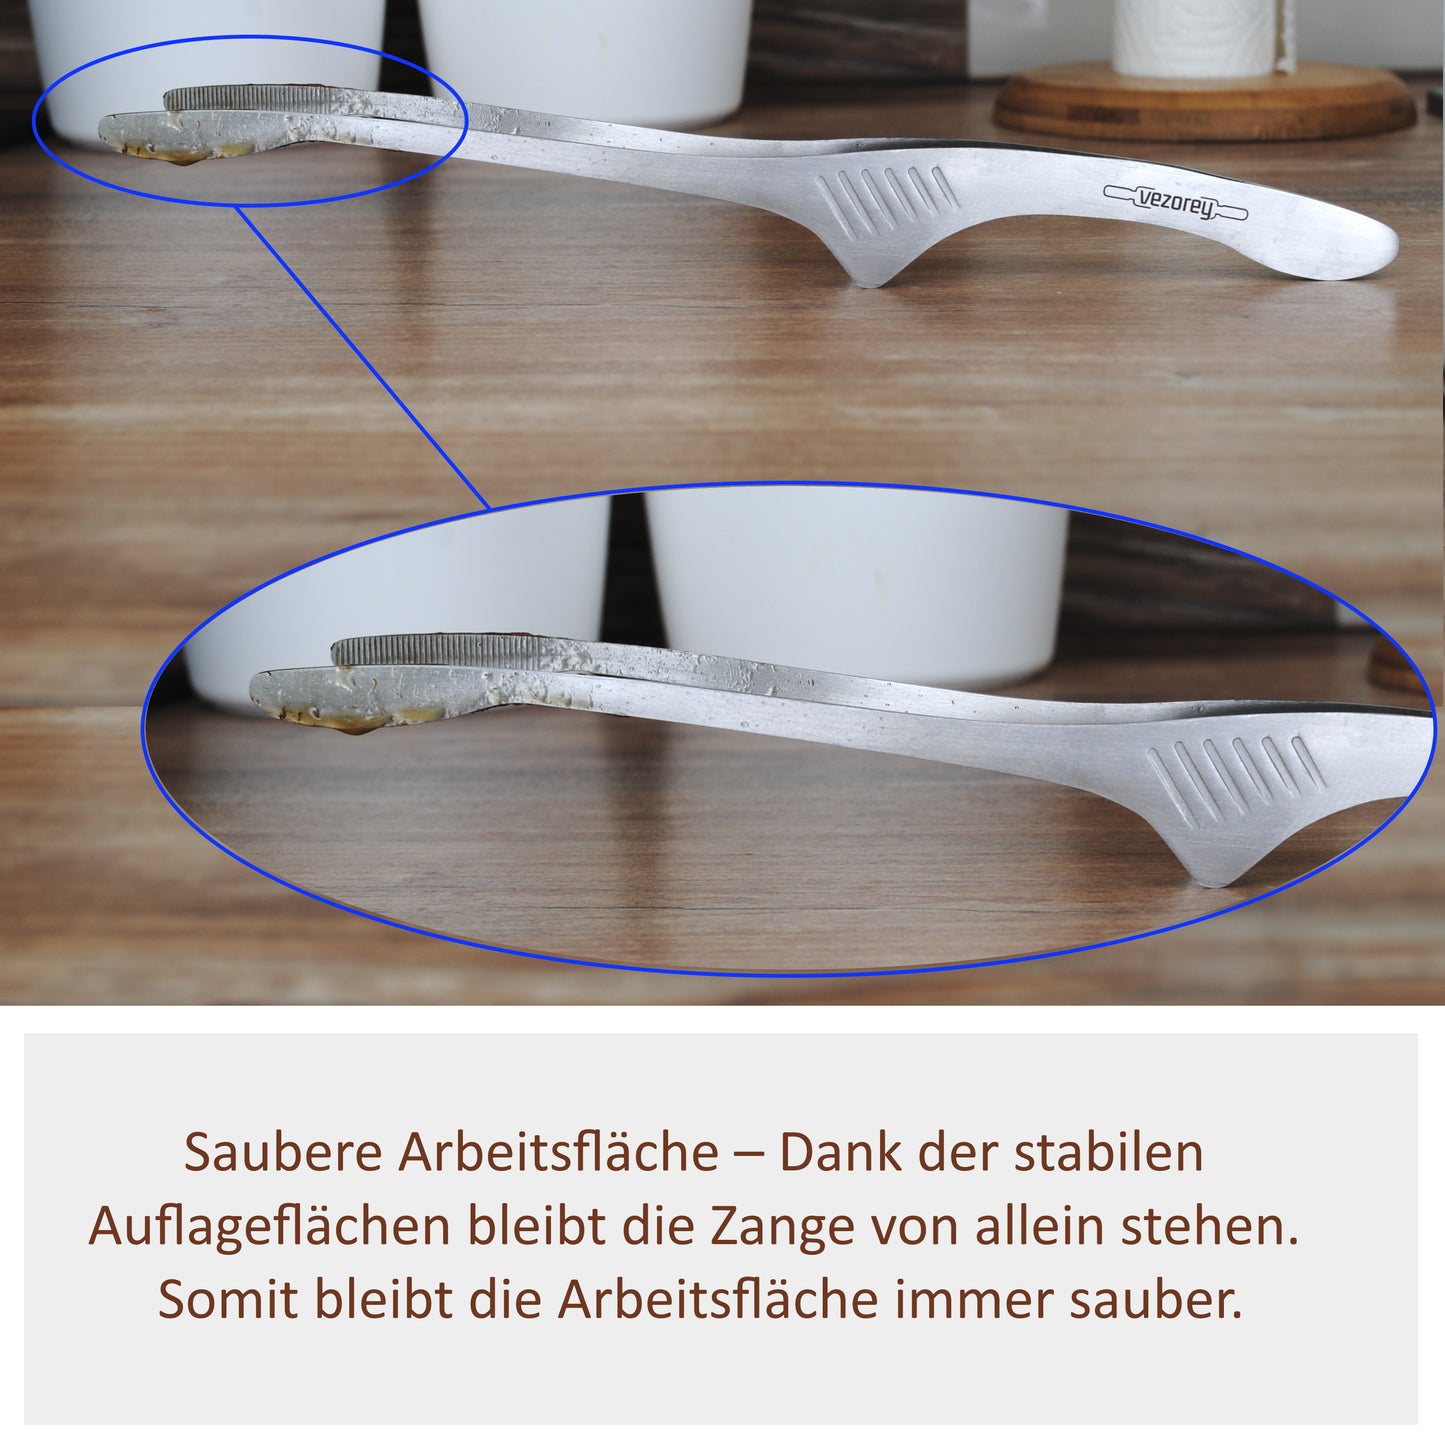 VEZOREY® - Küchenzange - Grillzange - Edelstahl Küchenhelfer mit integrierter Standfunktion